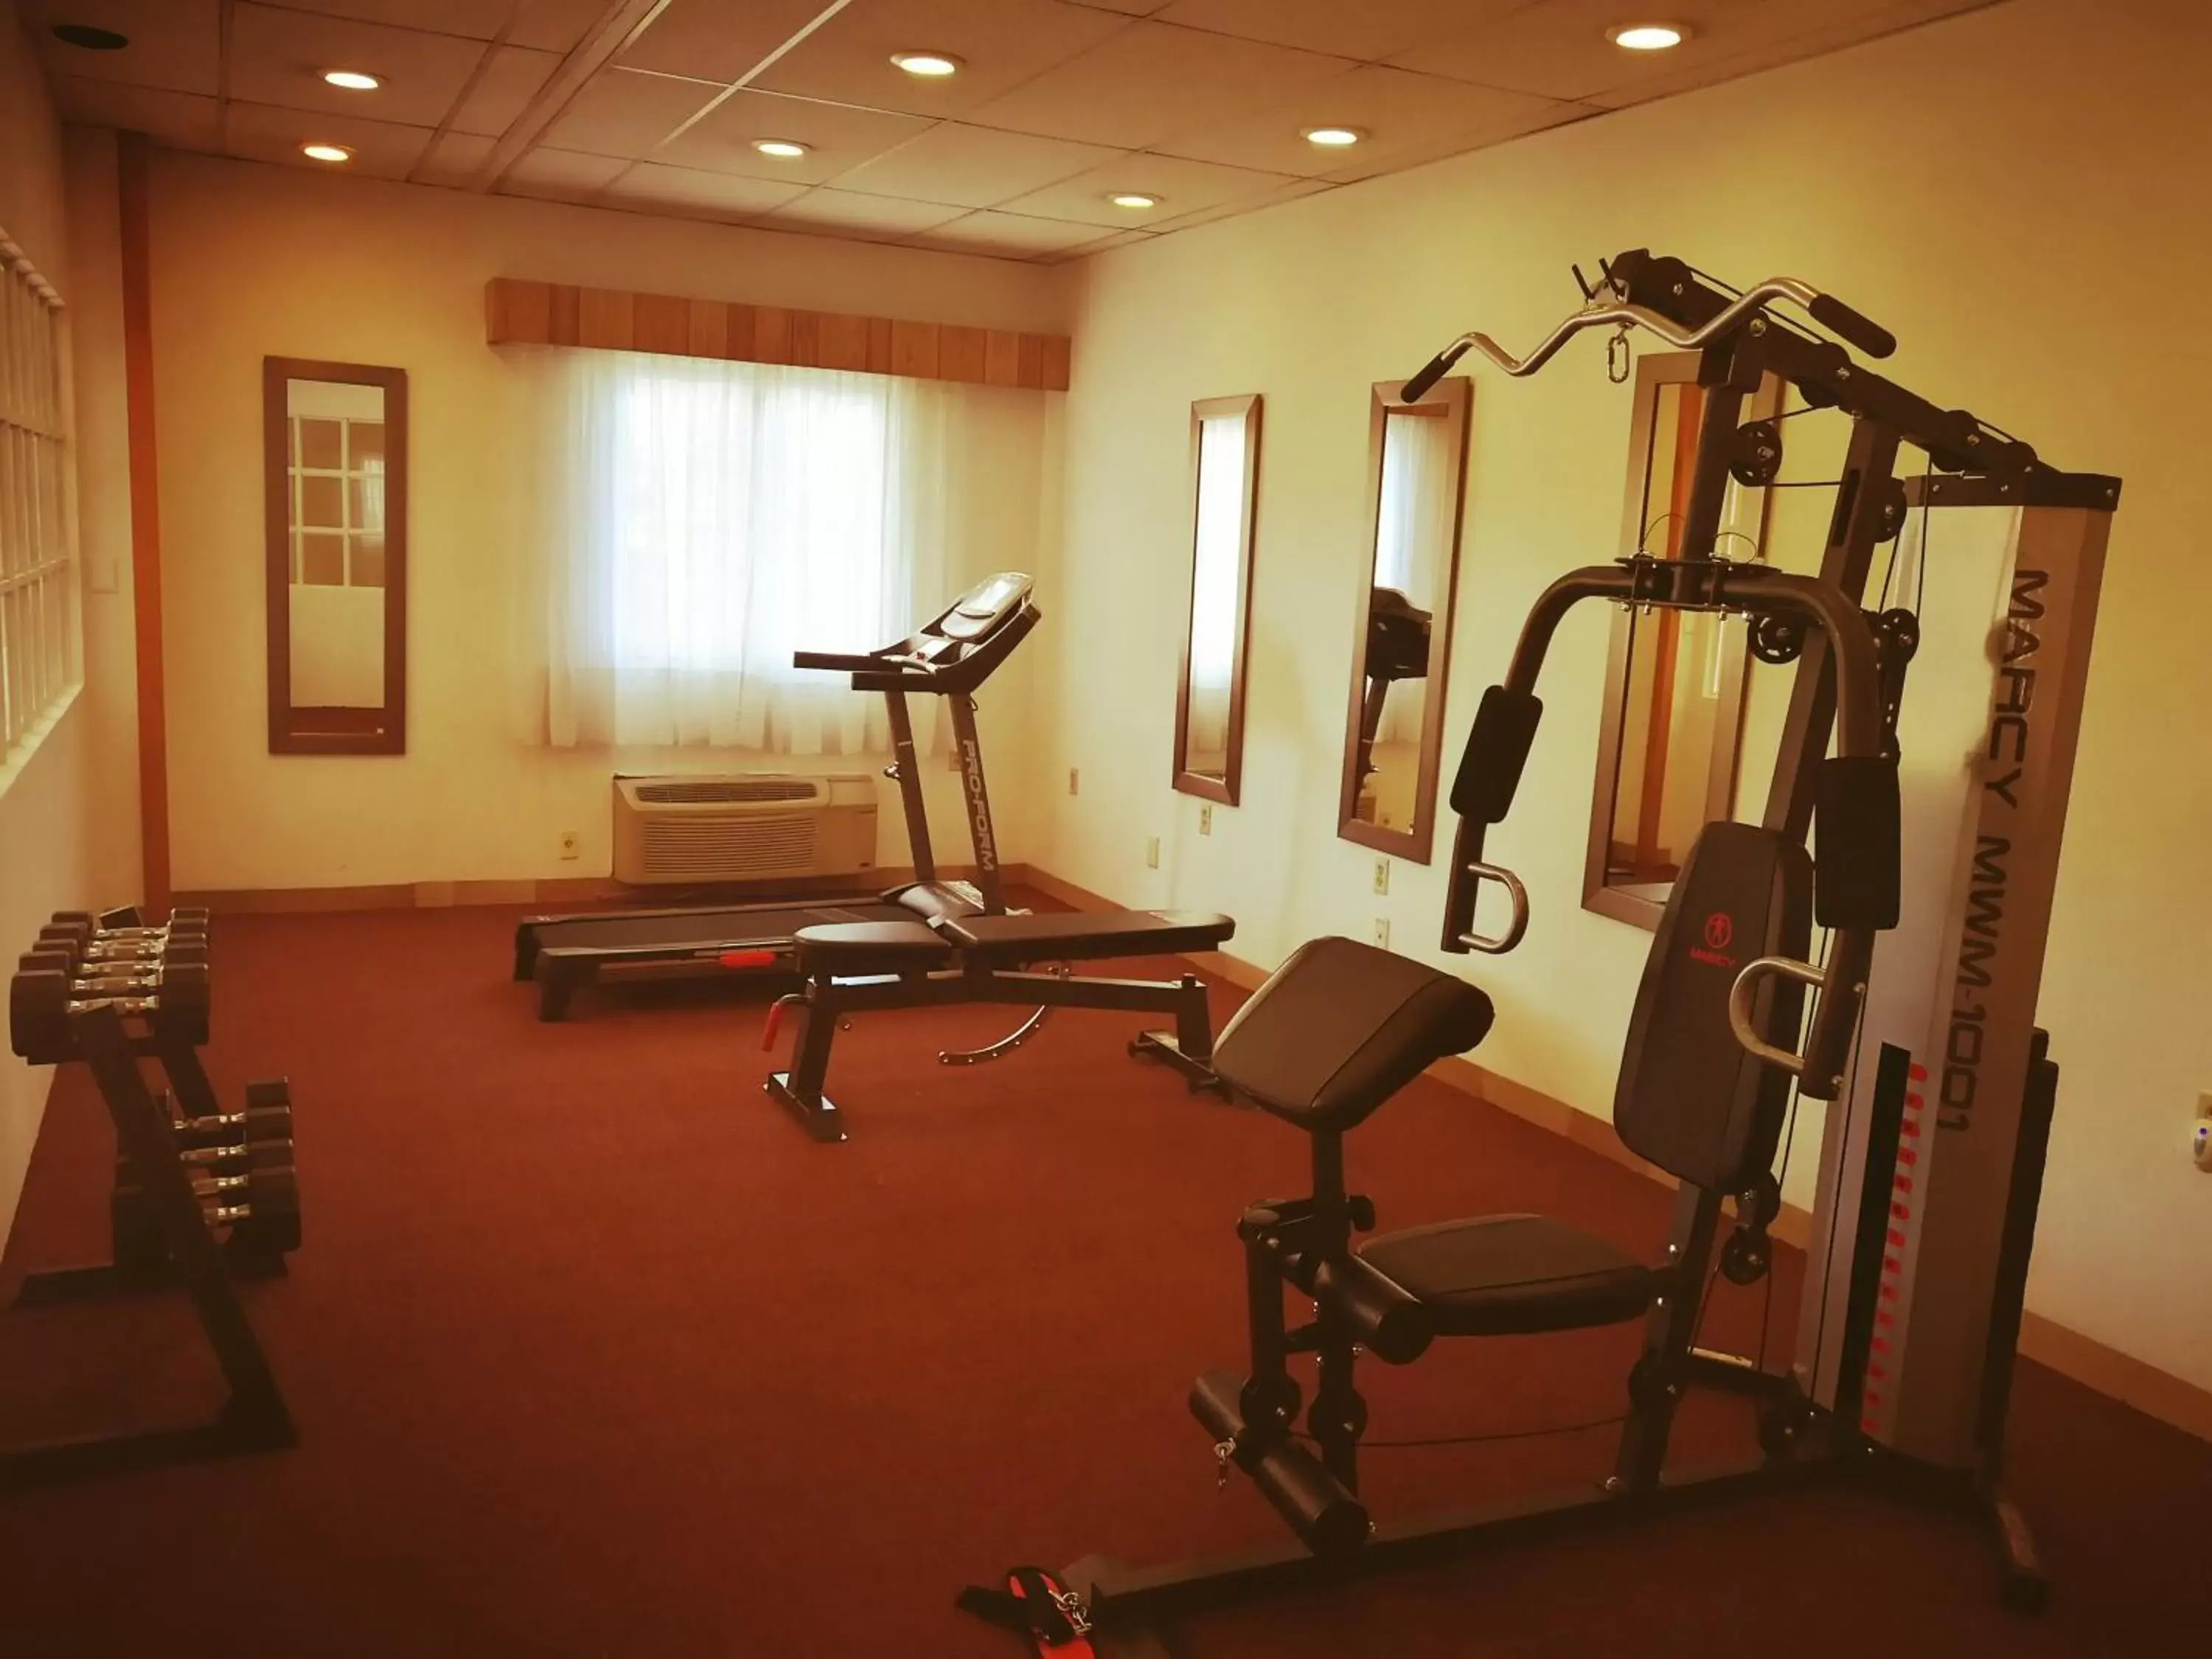 Fitness centre/facilities, Fitness Center/Facilities in Hotel Oliver Inn - Tlalnepantla